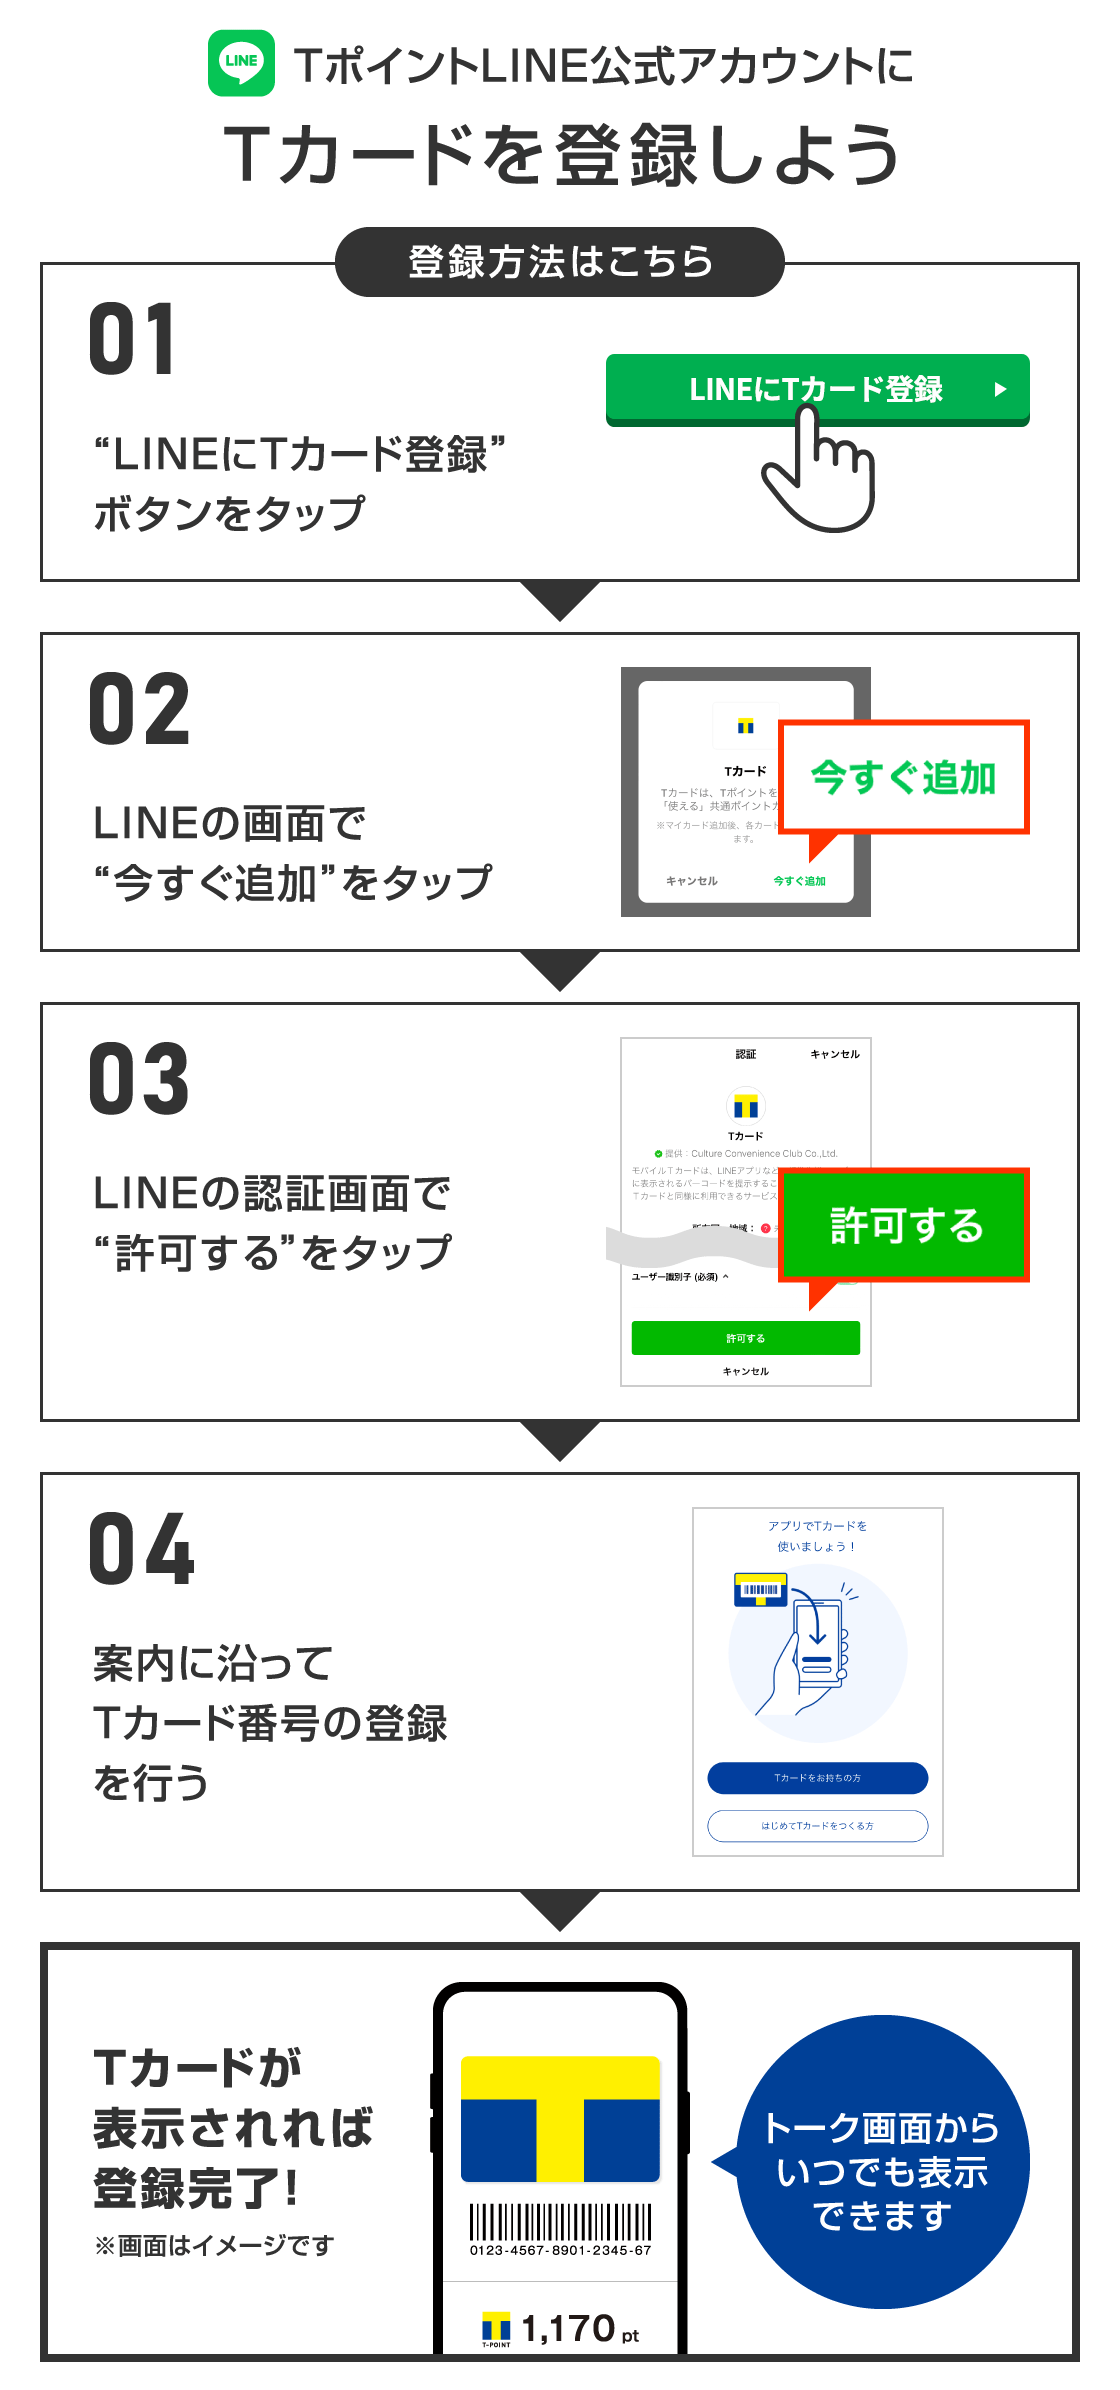 Line新規id連携でもれなく50ptプレゼント Tサイト Tポイント Tカード